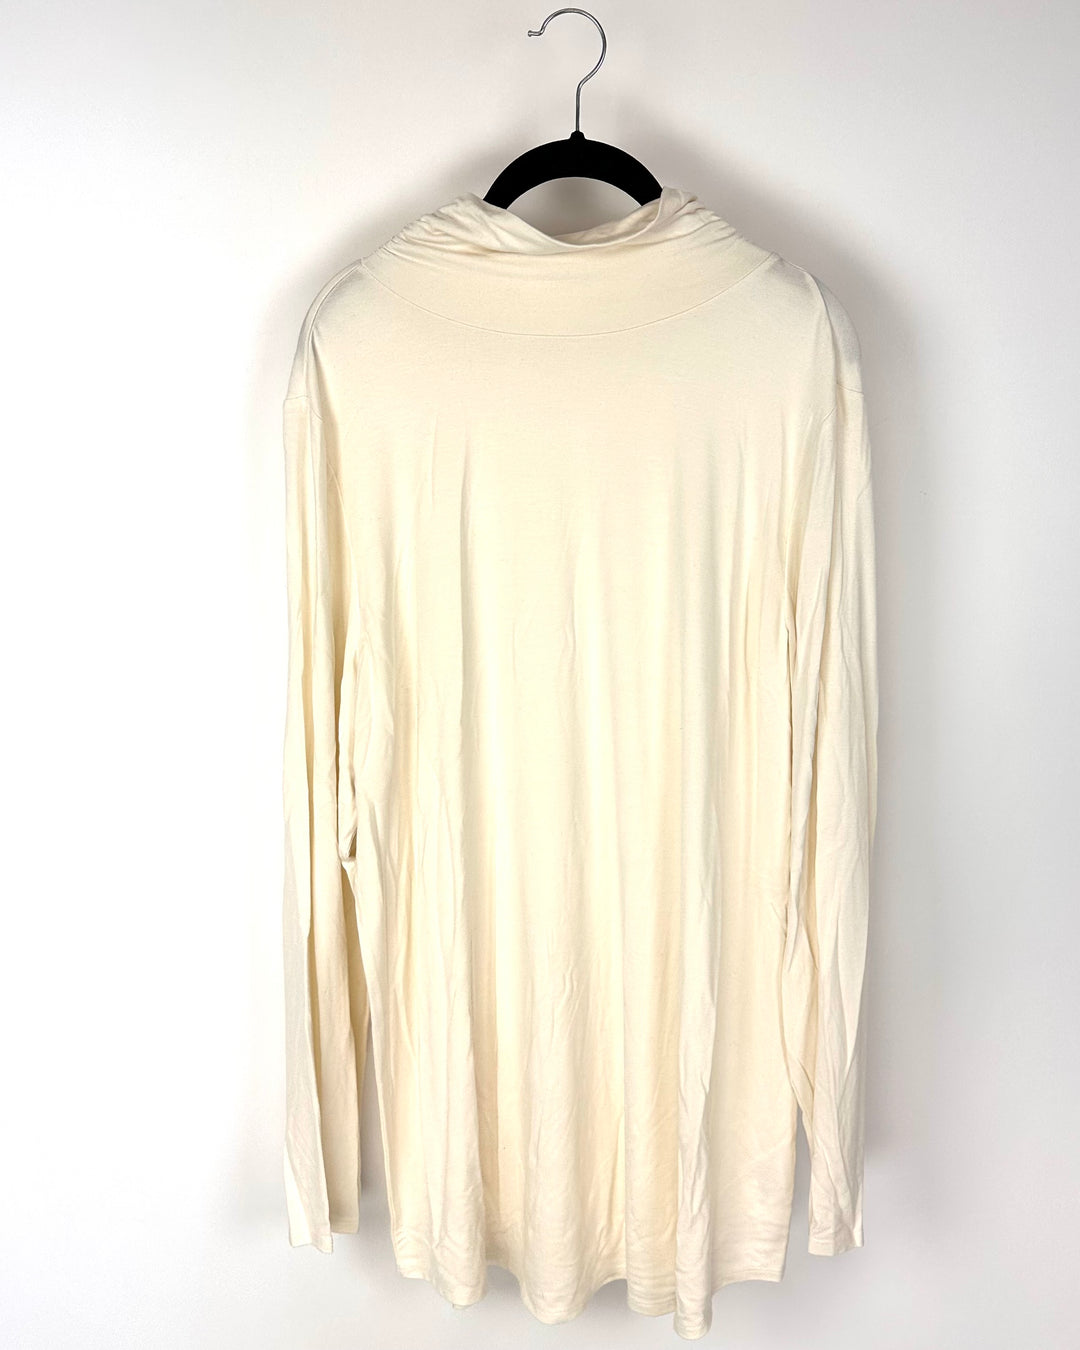 Cream Long Sleeve Turtle Neck Shirt - Size 14-16